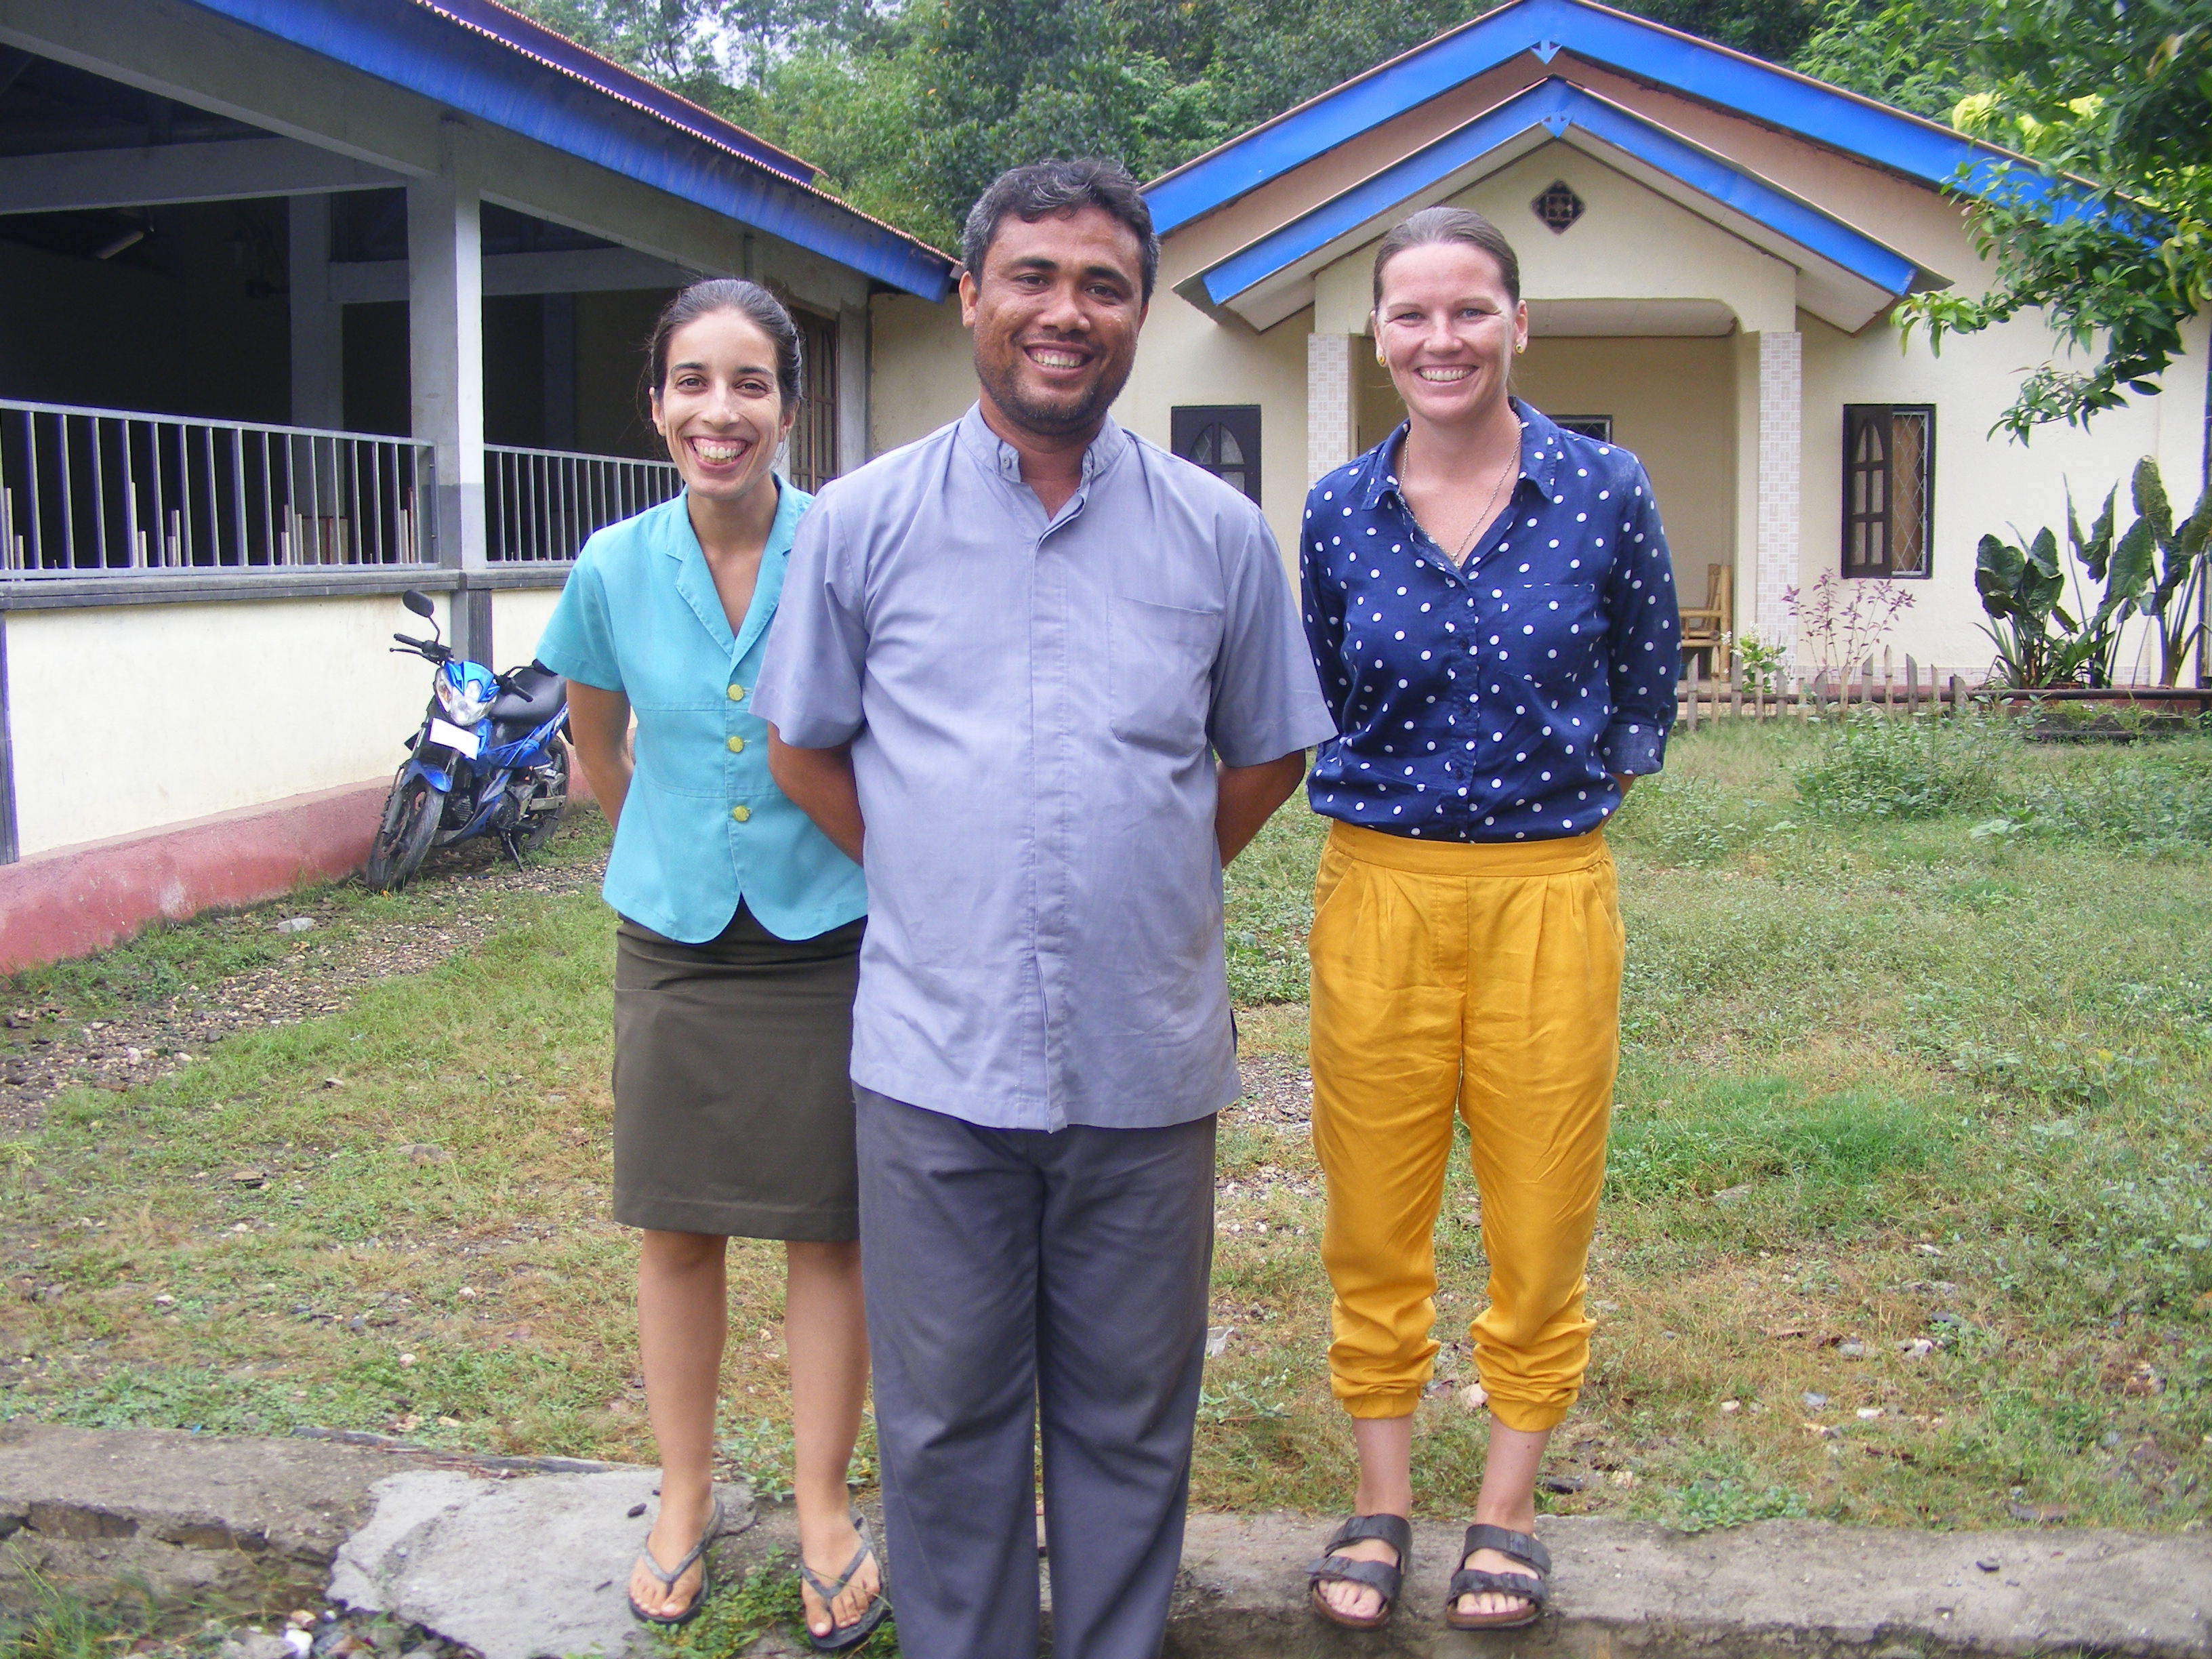 Guida Cabrita, Father Alberty and Sam Haddin in Bedois, Timor-Leste